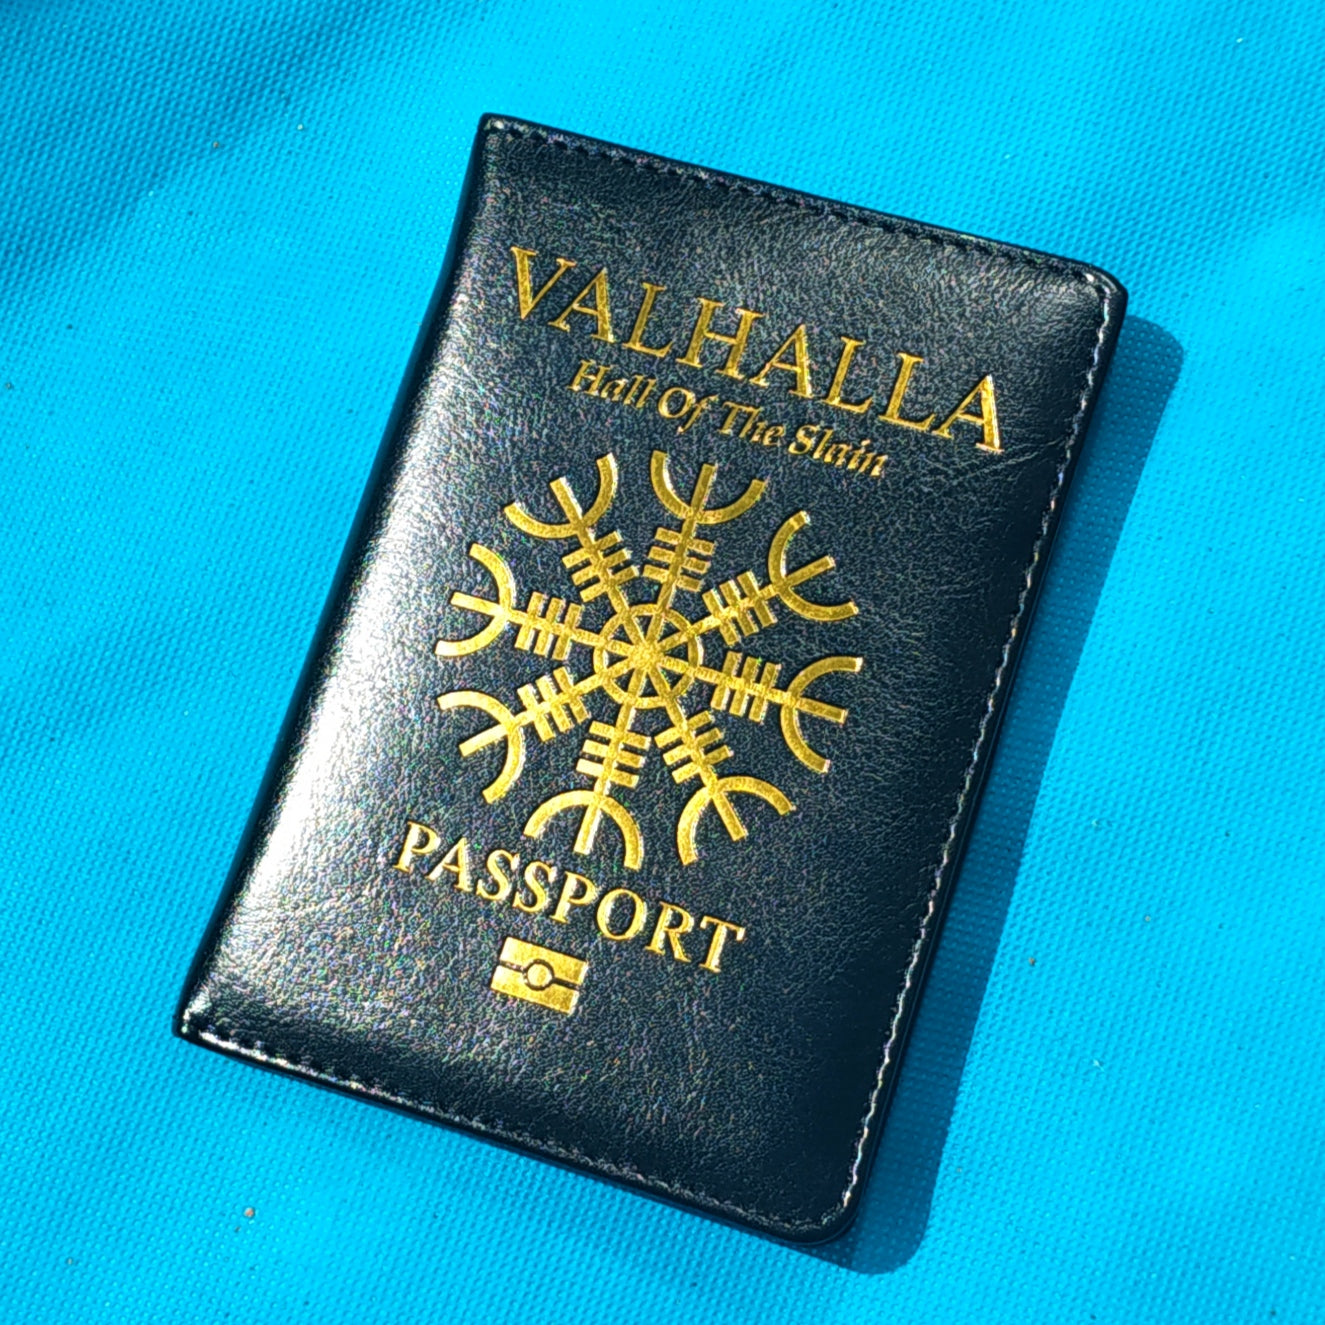 Valhalla Viking Passport Cover/Notebook Holder